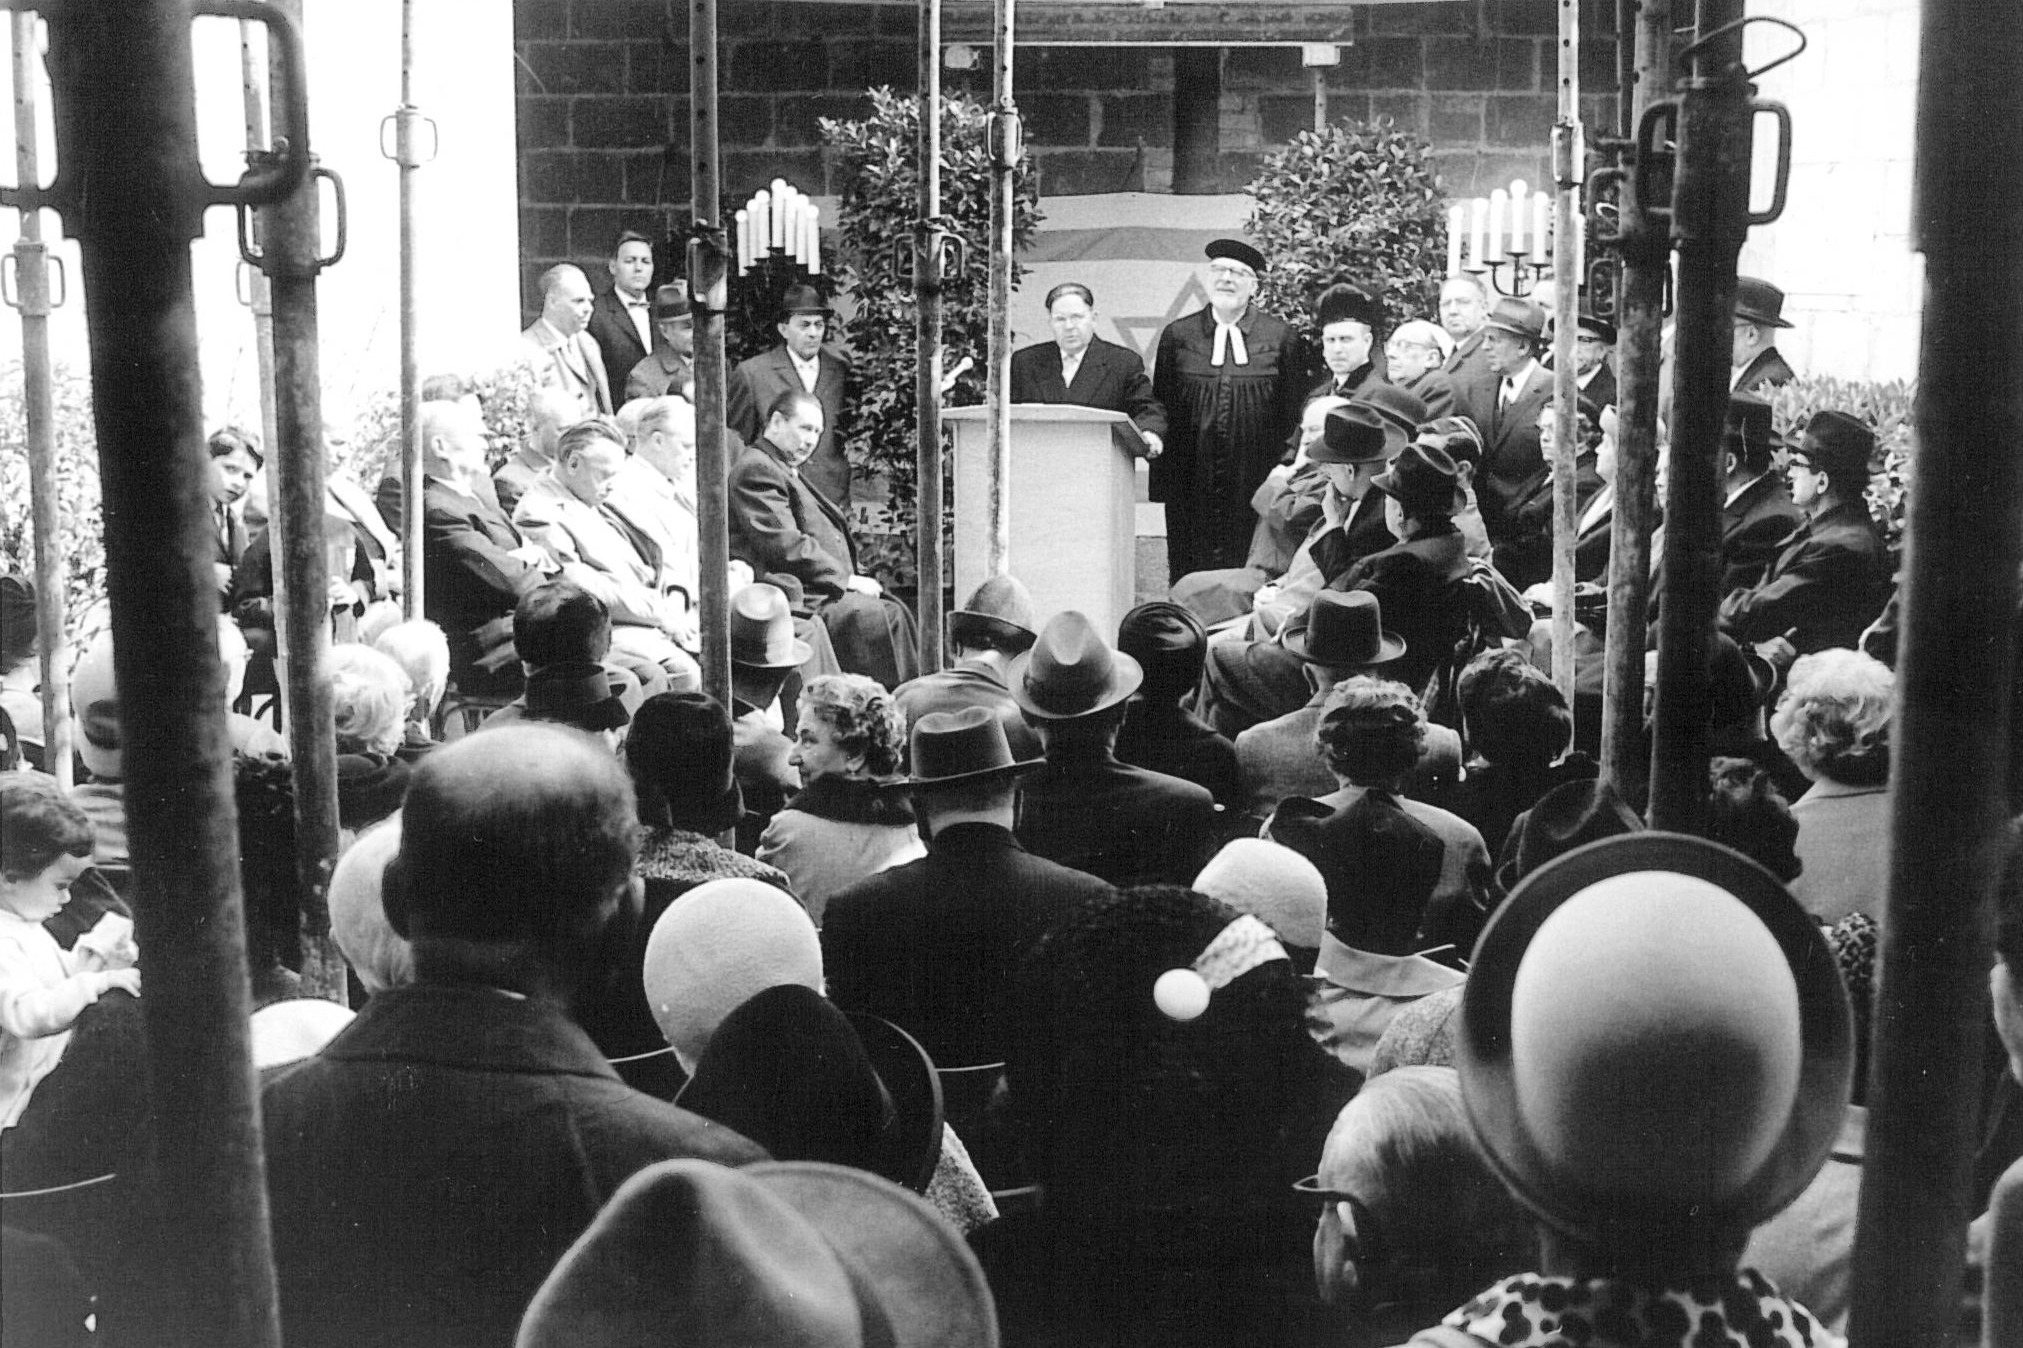 Le maire Georg Buch prend la parole lors de la pose de la première pierre en 1965 en tant que représentant de la capitale du Land de Wiesbaden. Collection de la communauté juive de Wiesbaden